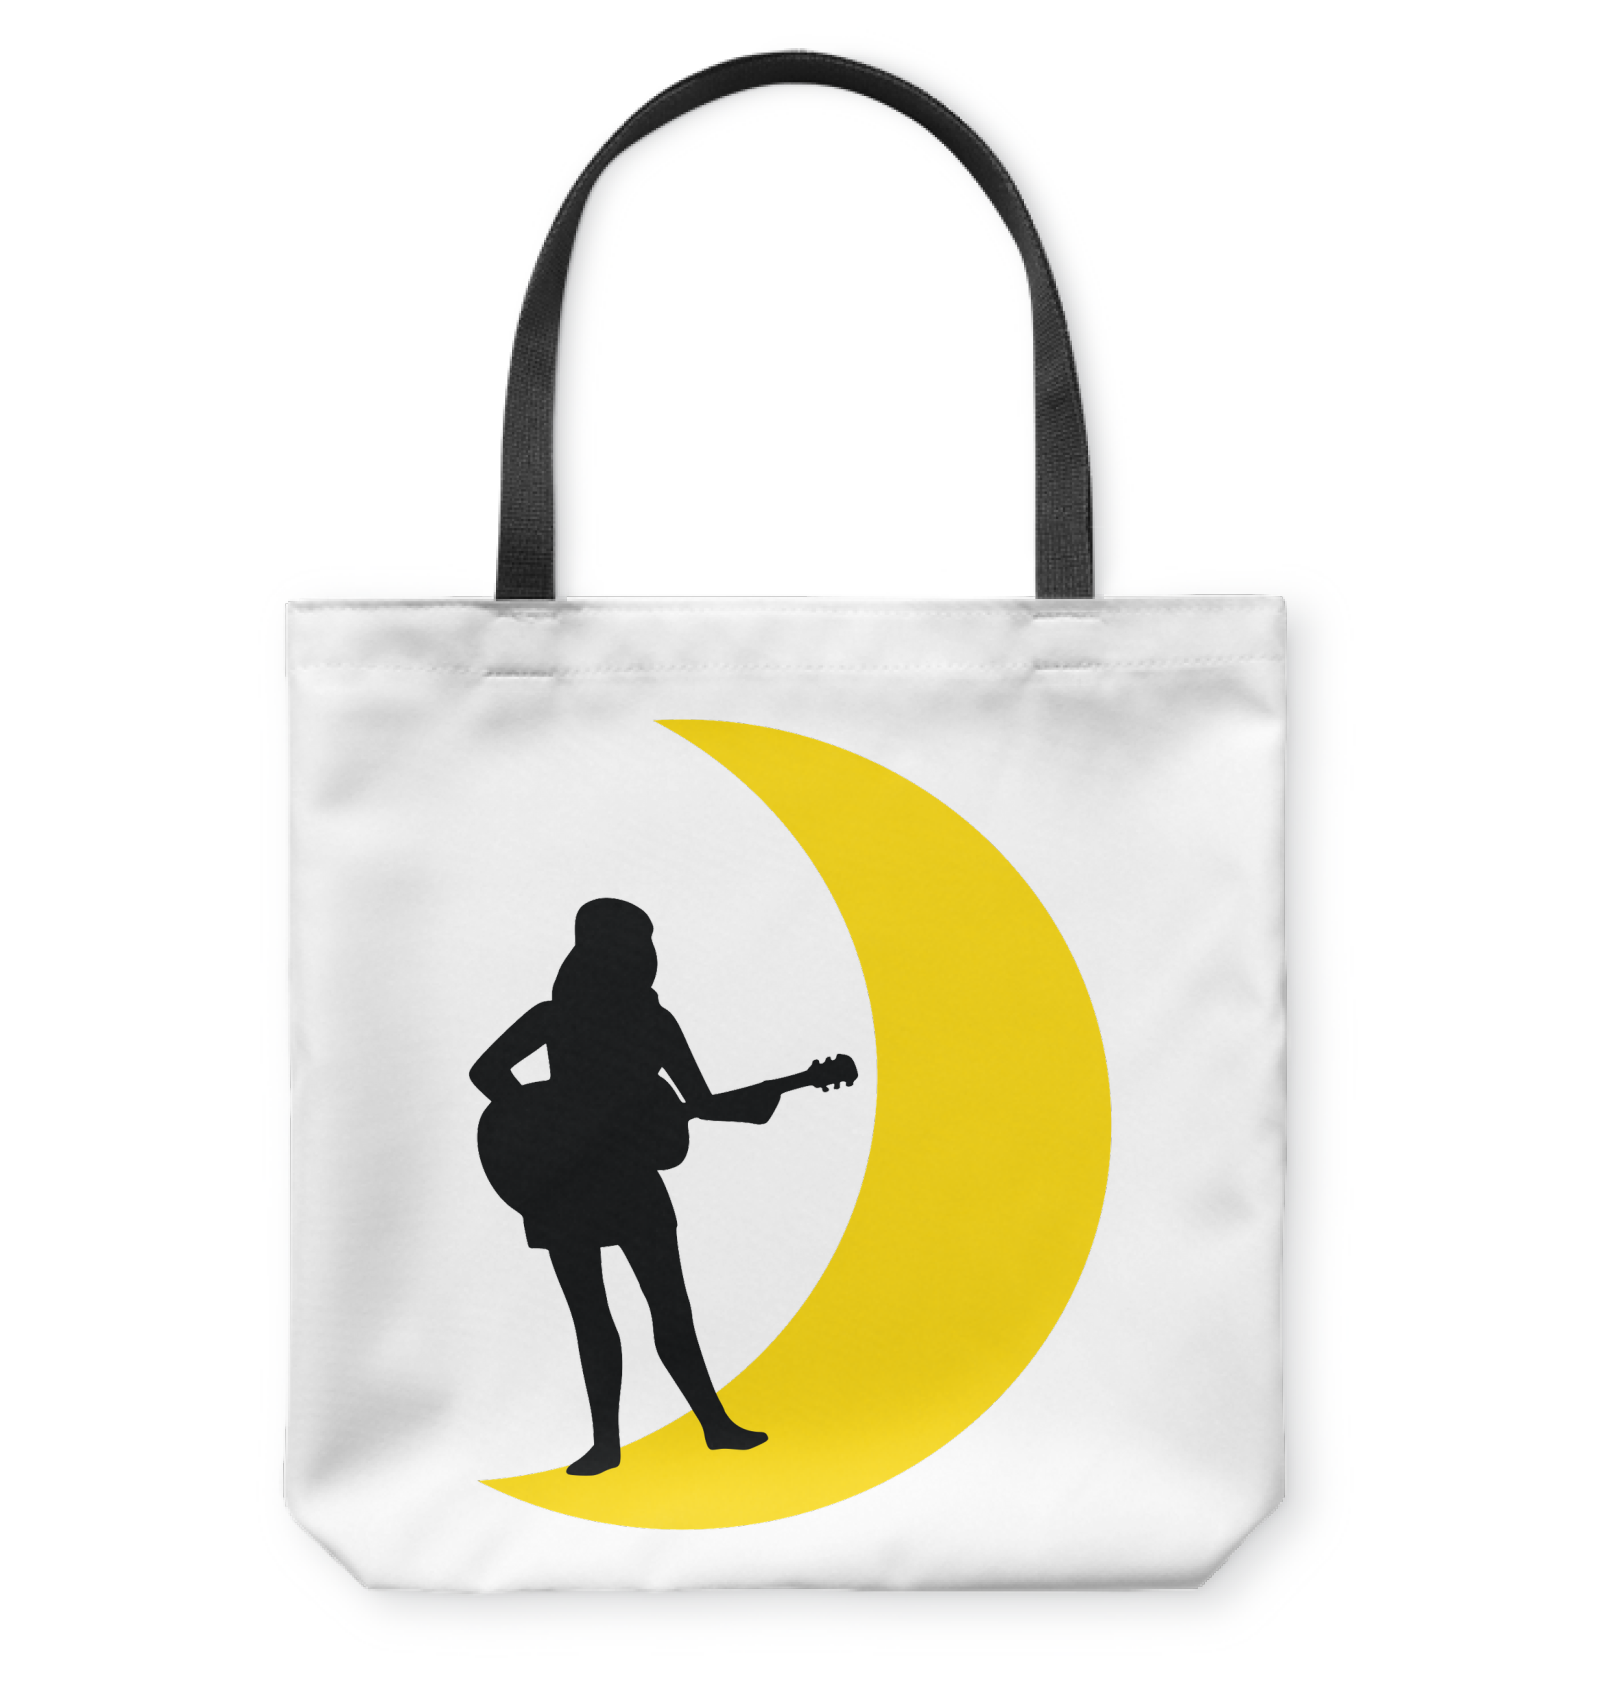 Moonlight Guitar Player  - Basketweave Tote Bag